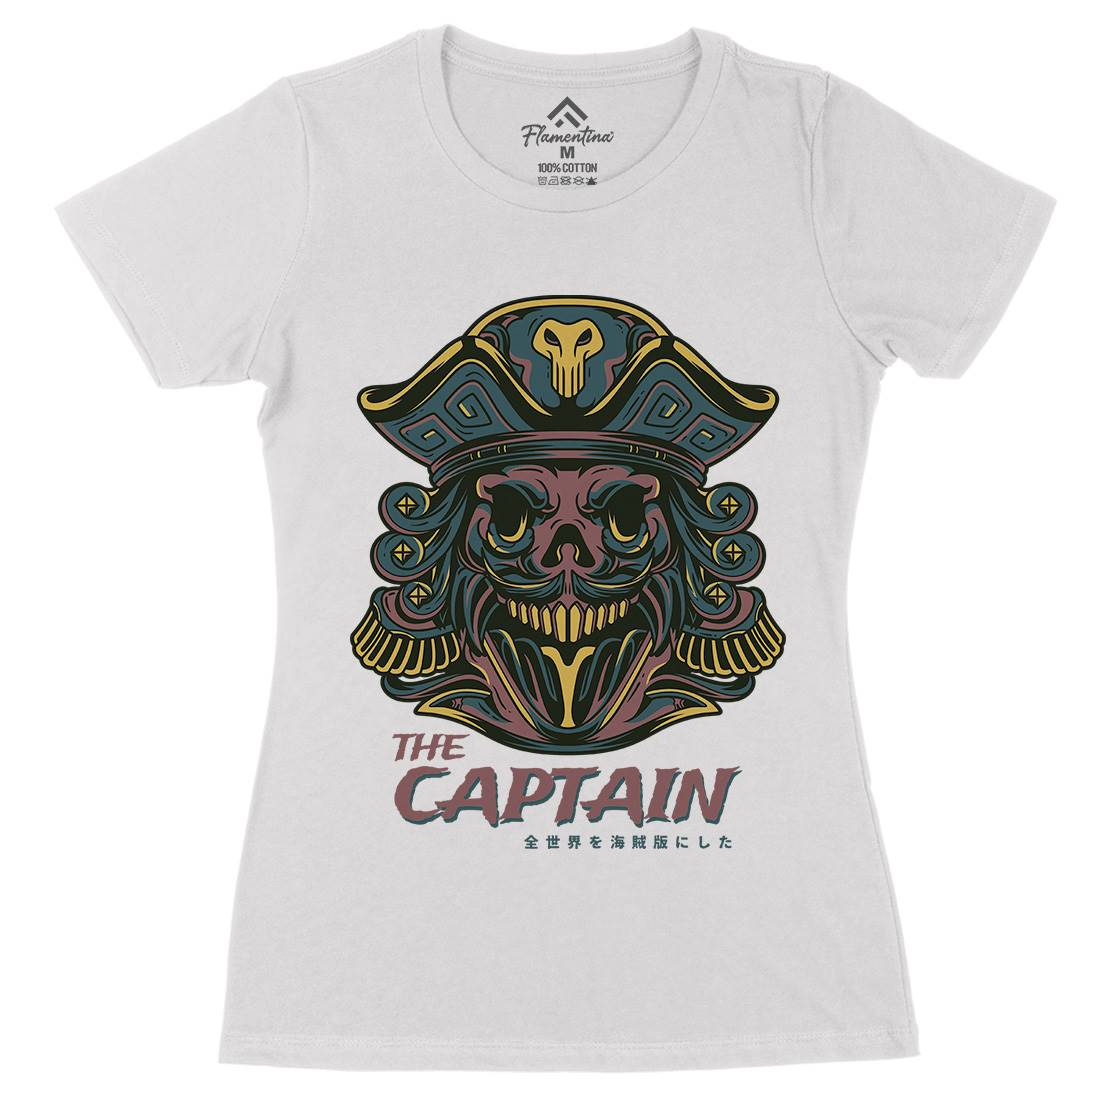 Captain Womens Organic Crew Neck T-Shirt Navy D847